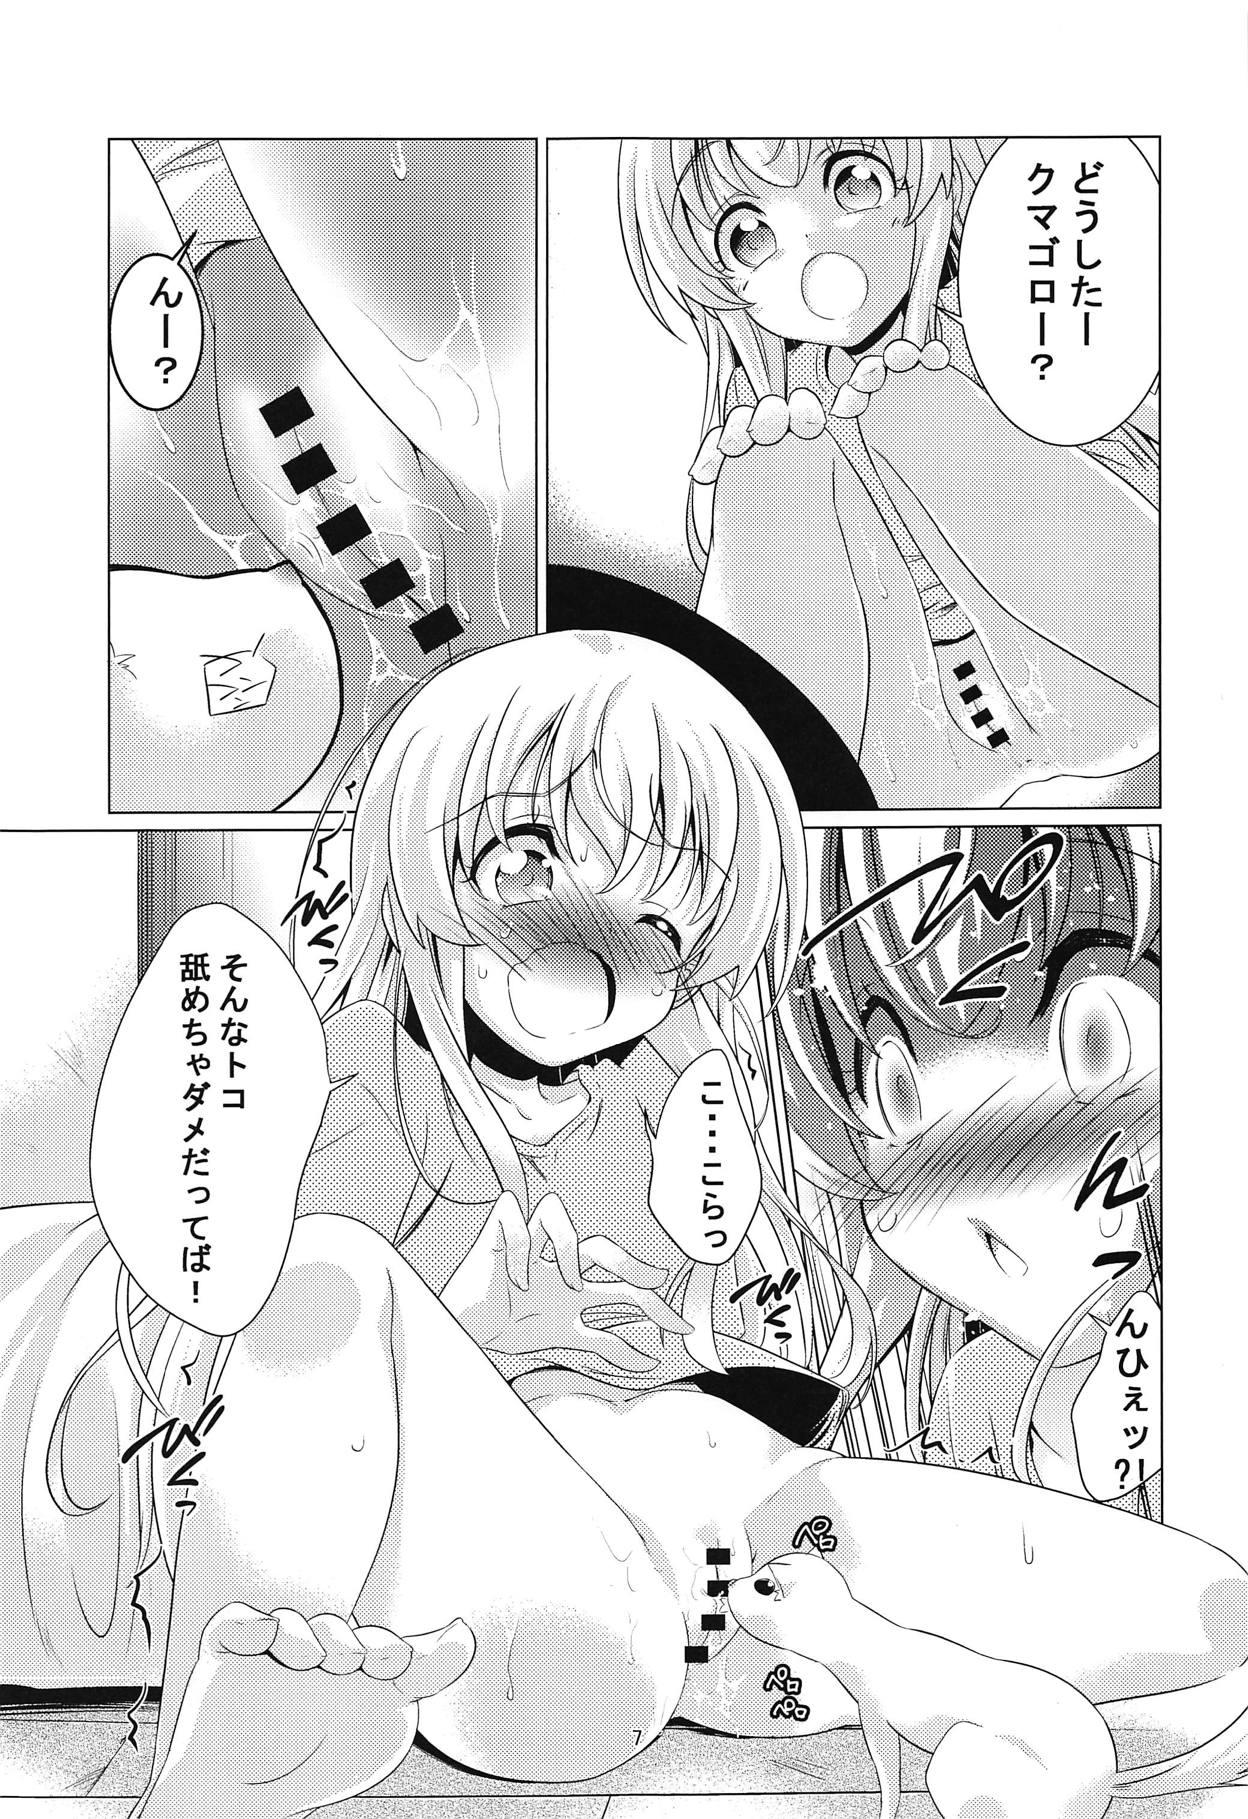 Caliente Uchi no Pet ga Namesugiru! - Uchi no maid ga uzasugiru Asslicking - Page 6